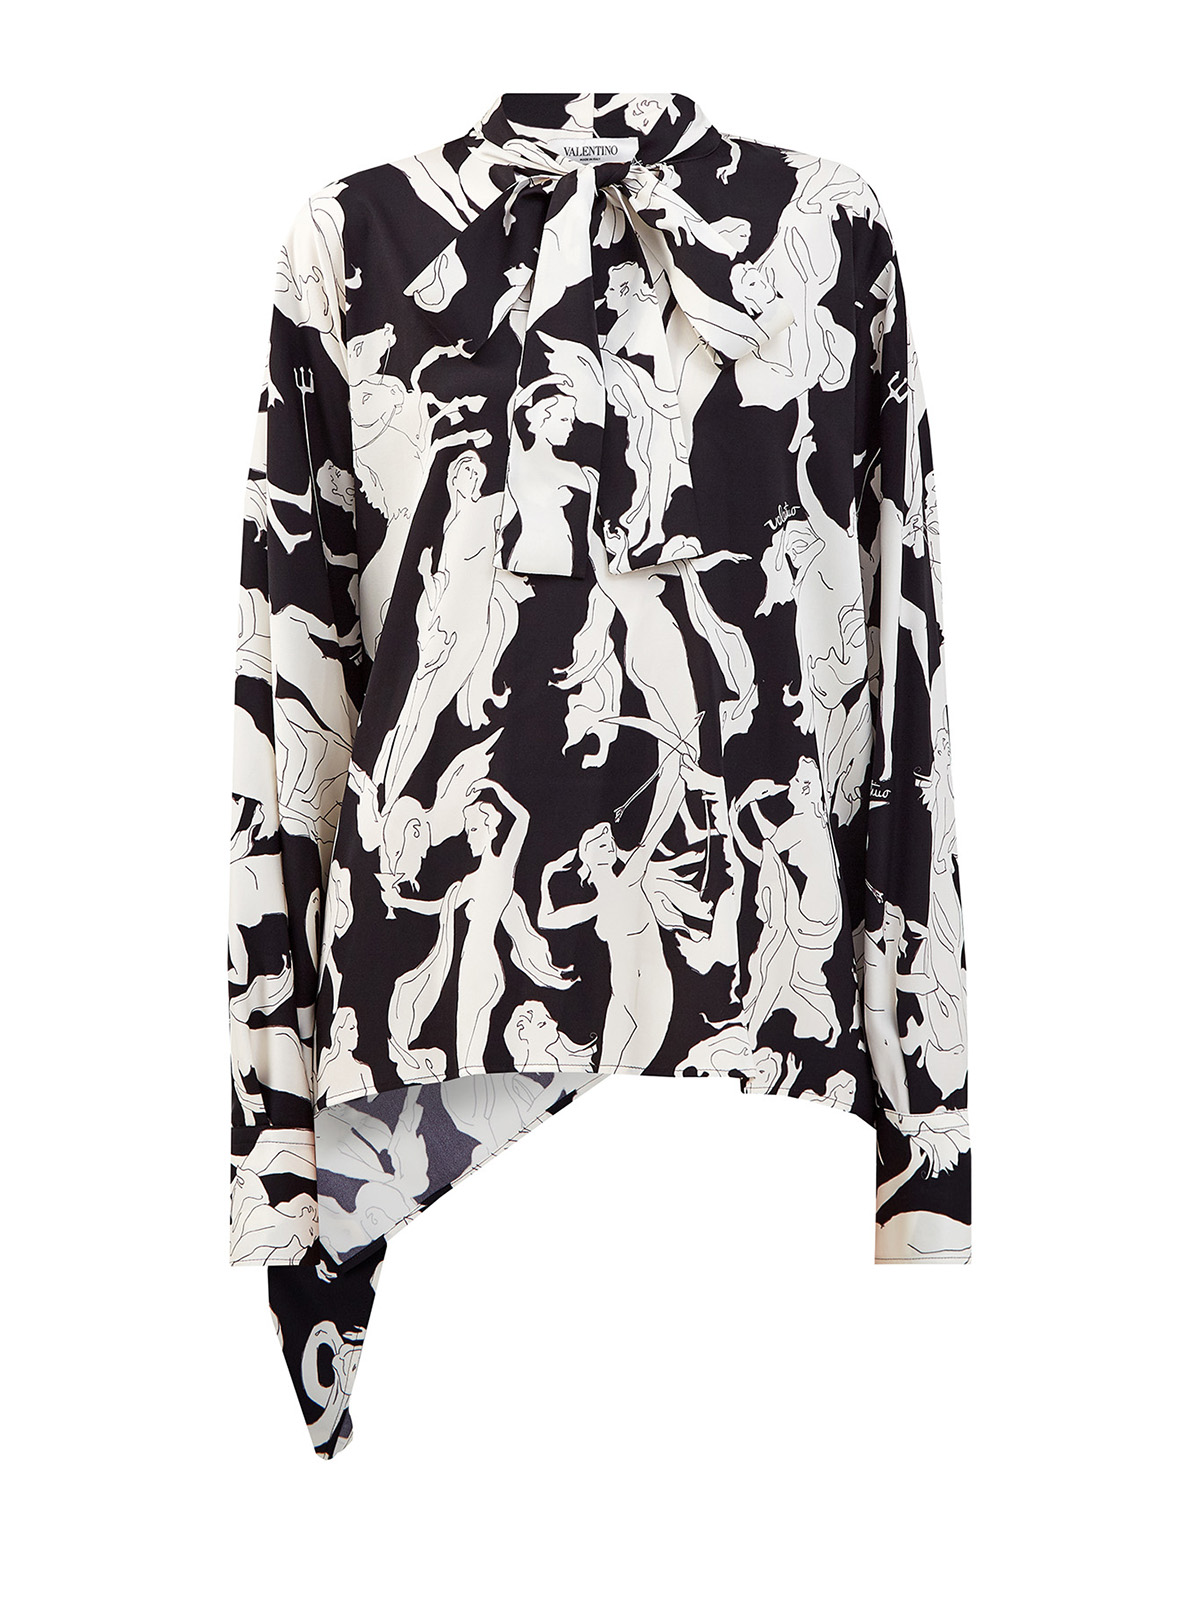 Асимметричная блуза Dancing Gods из шелкового твила VALENTINO, цвет черно-белый, размер 40;44 - фото 1